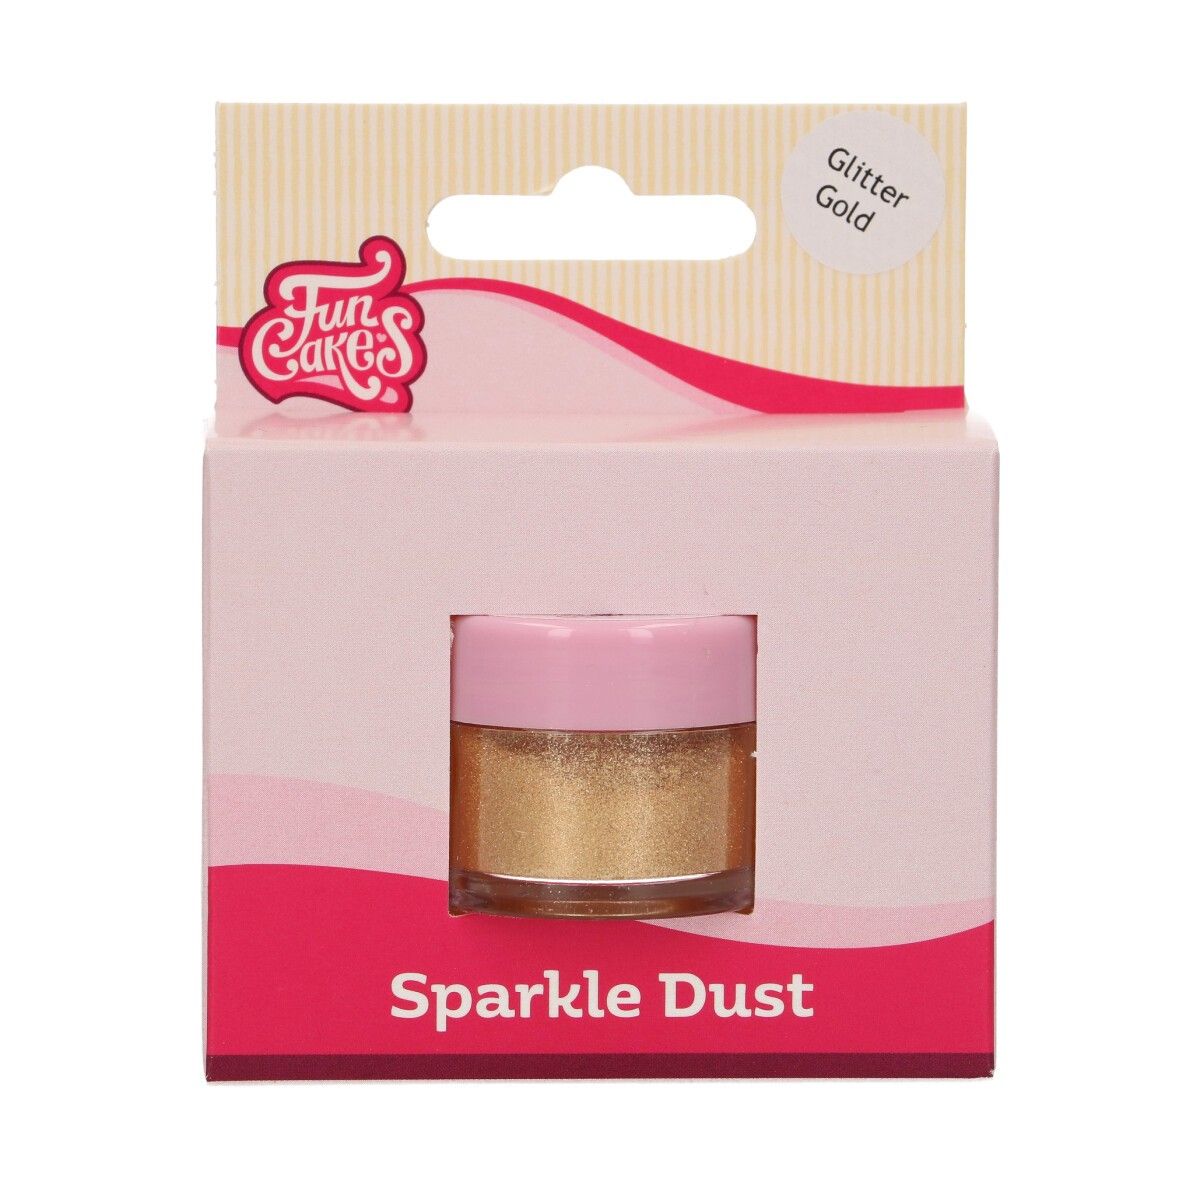 Jedlá glitrová perleťová farba Glitter Gold 3,5g, FunCakes, F41000